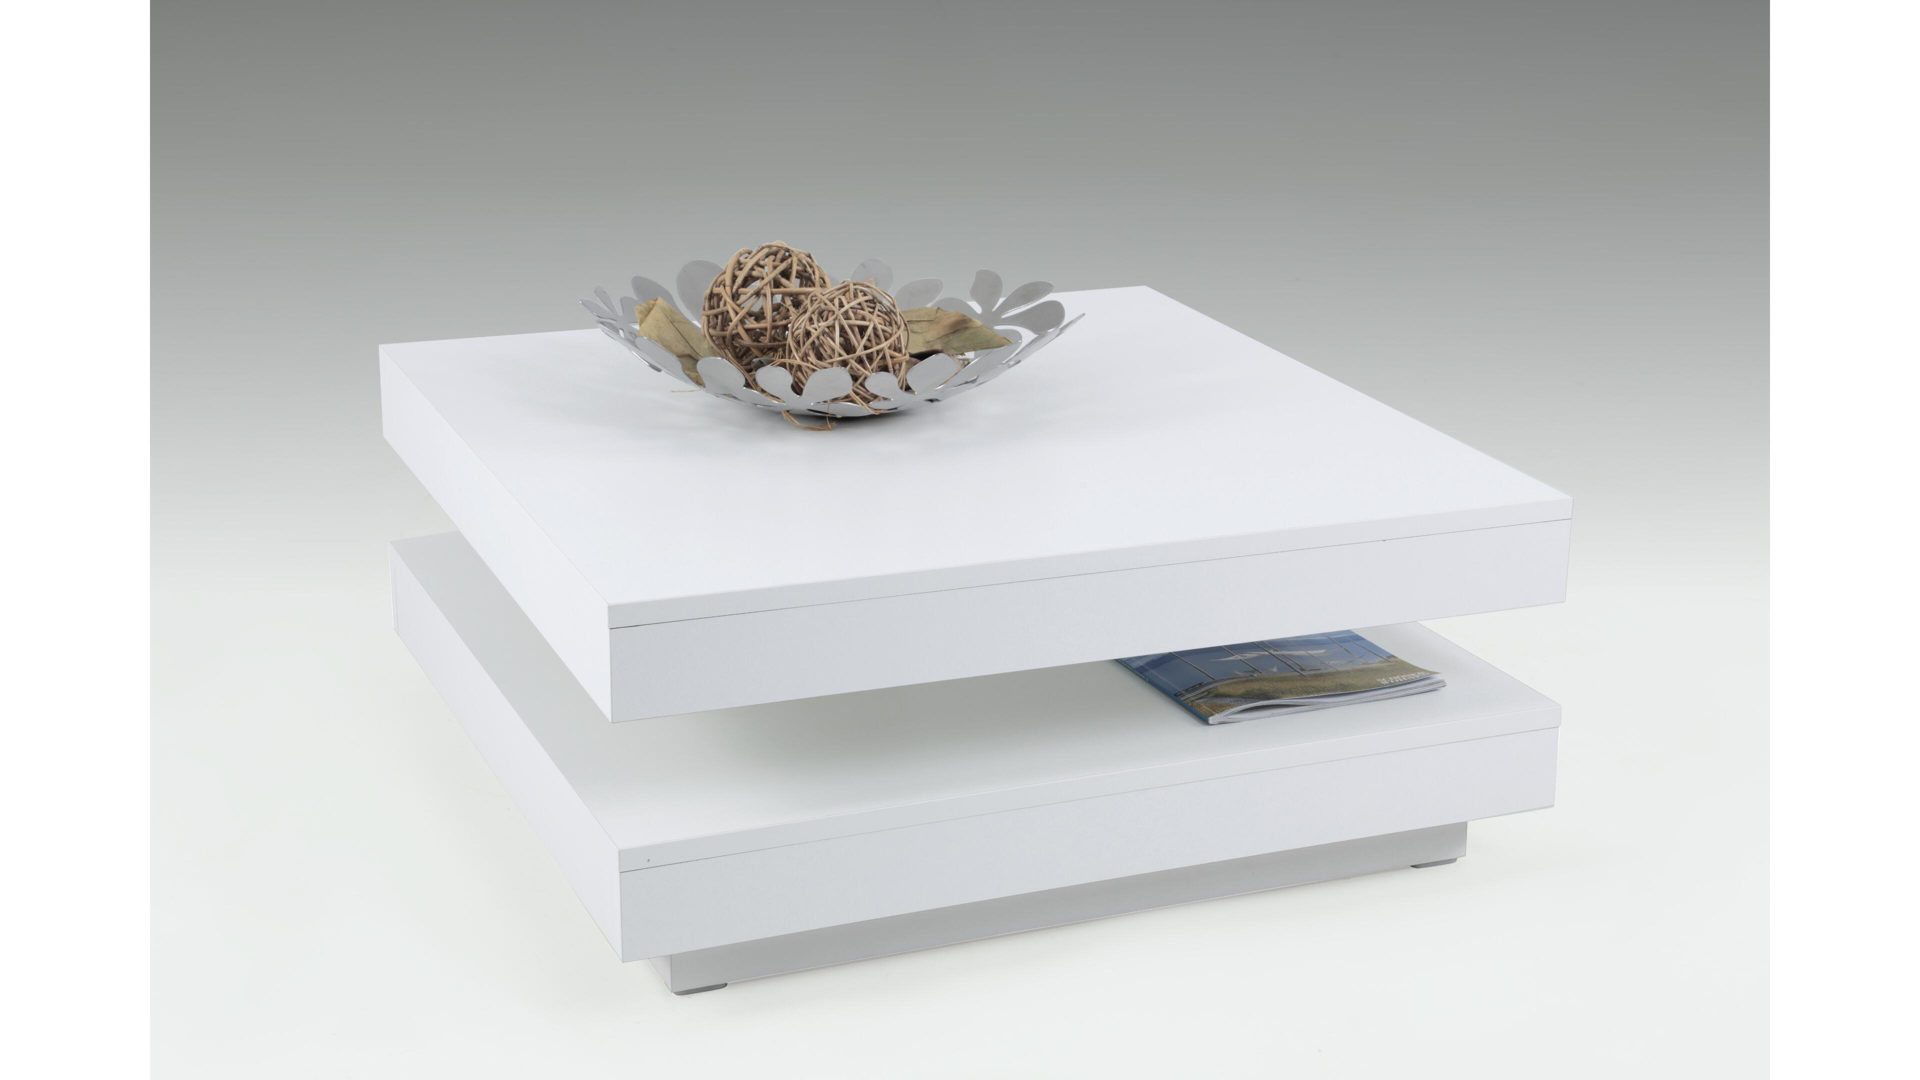 Couchtisch Hela aus Holz in Weiß Funktions-Couchtisch weiße Kunststoffoberflächen – ca. 78 x 78 cm